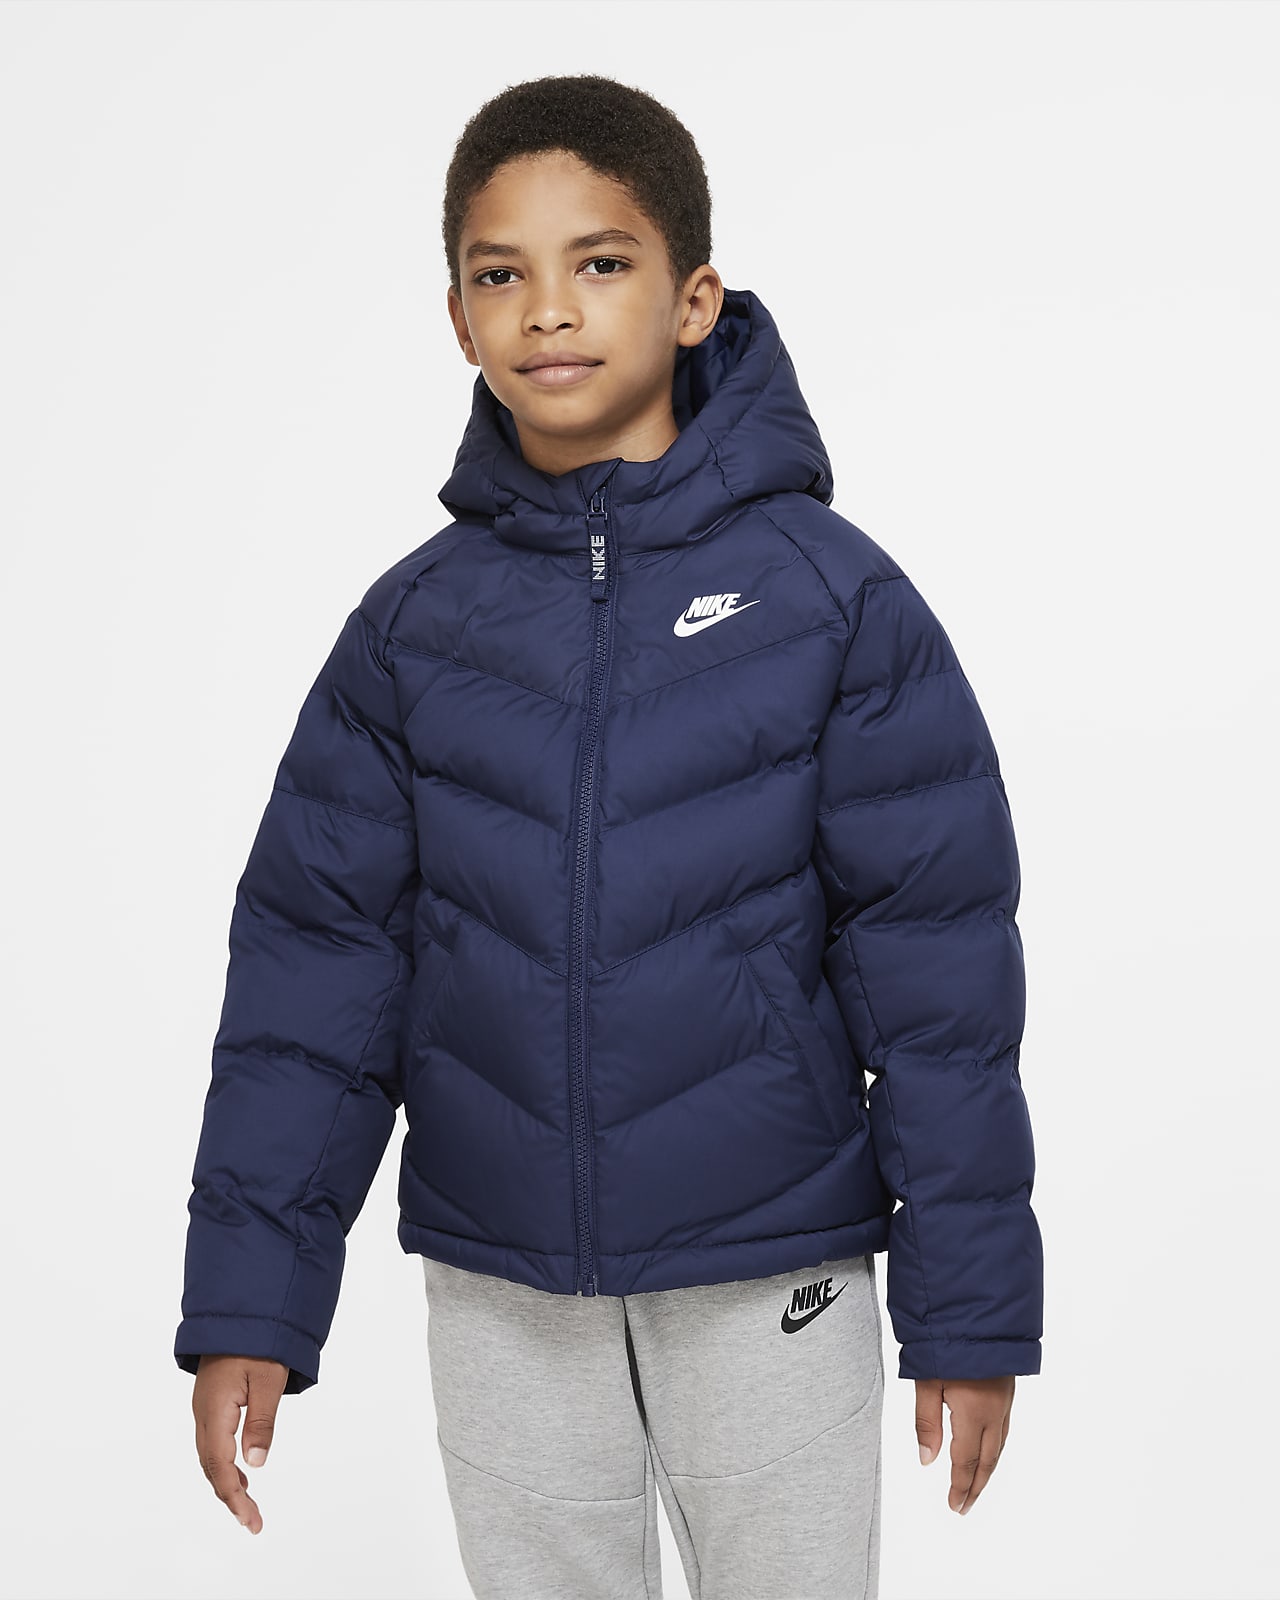 Nike Sportswear Older Kids' Synthetic-Fill Jacket. Nike NL